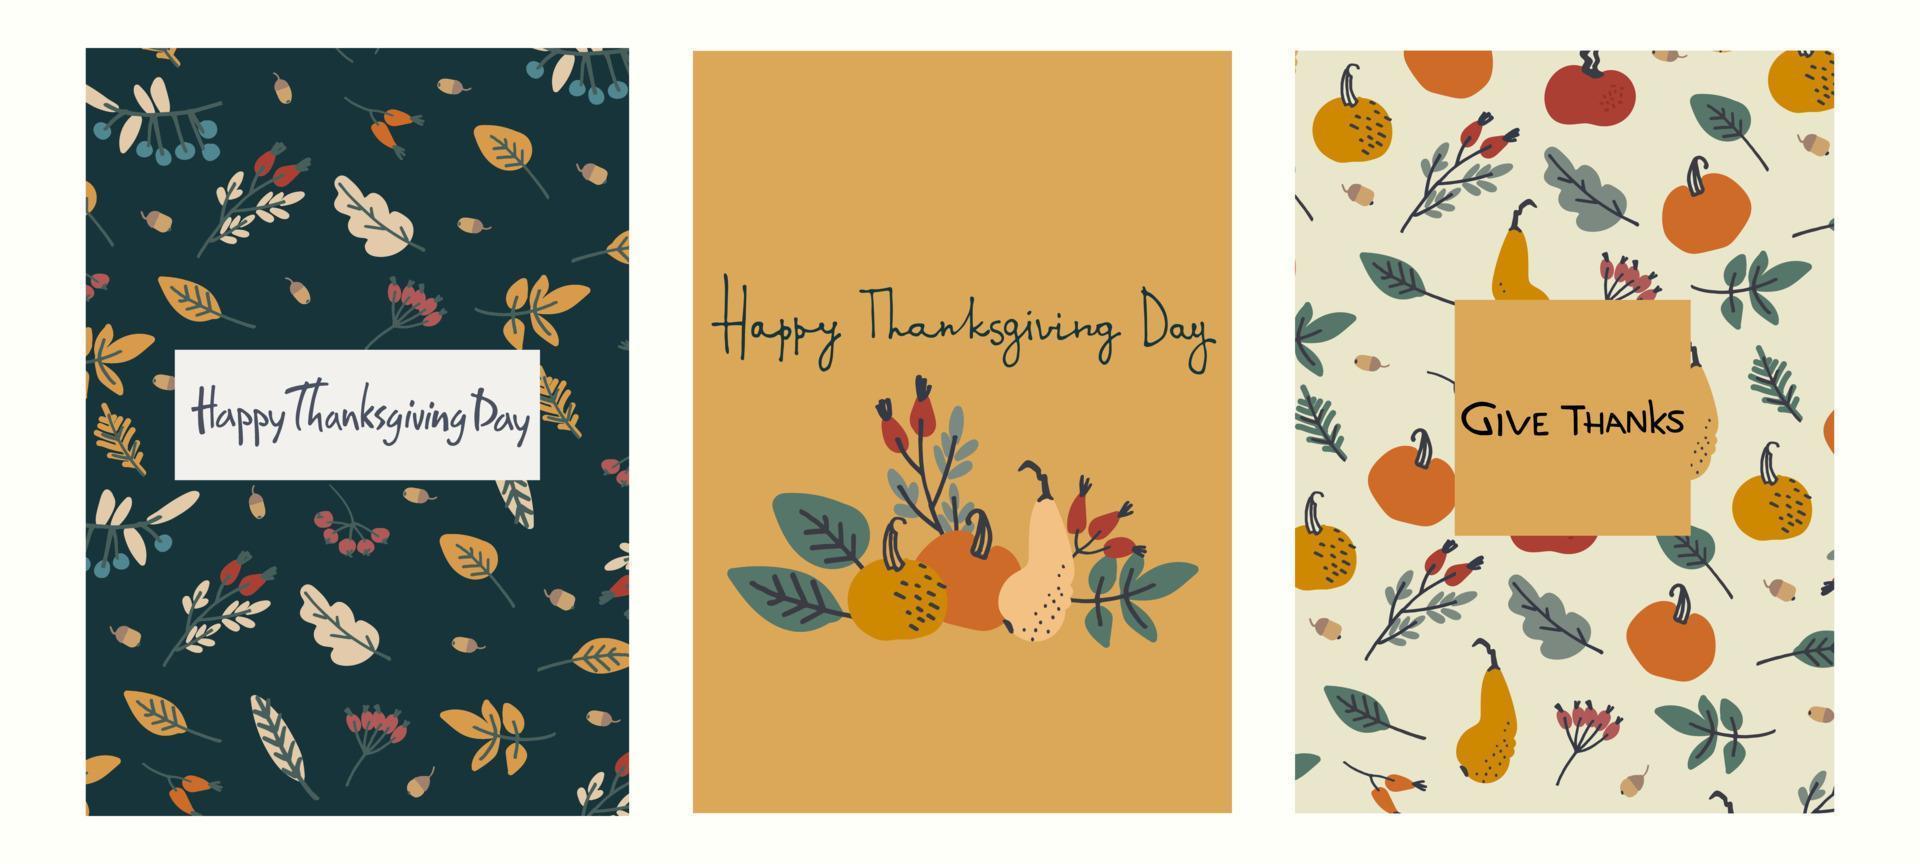 Happy Thanksgiving-Karten-Set-Design. handbeschrifteter Grußsatz, Dekoration mit Kürbissen, Blättern, Beeren, Eicheln auf hellblauem Hintergrund vektor